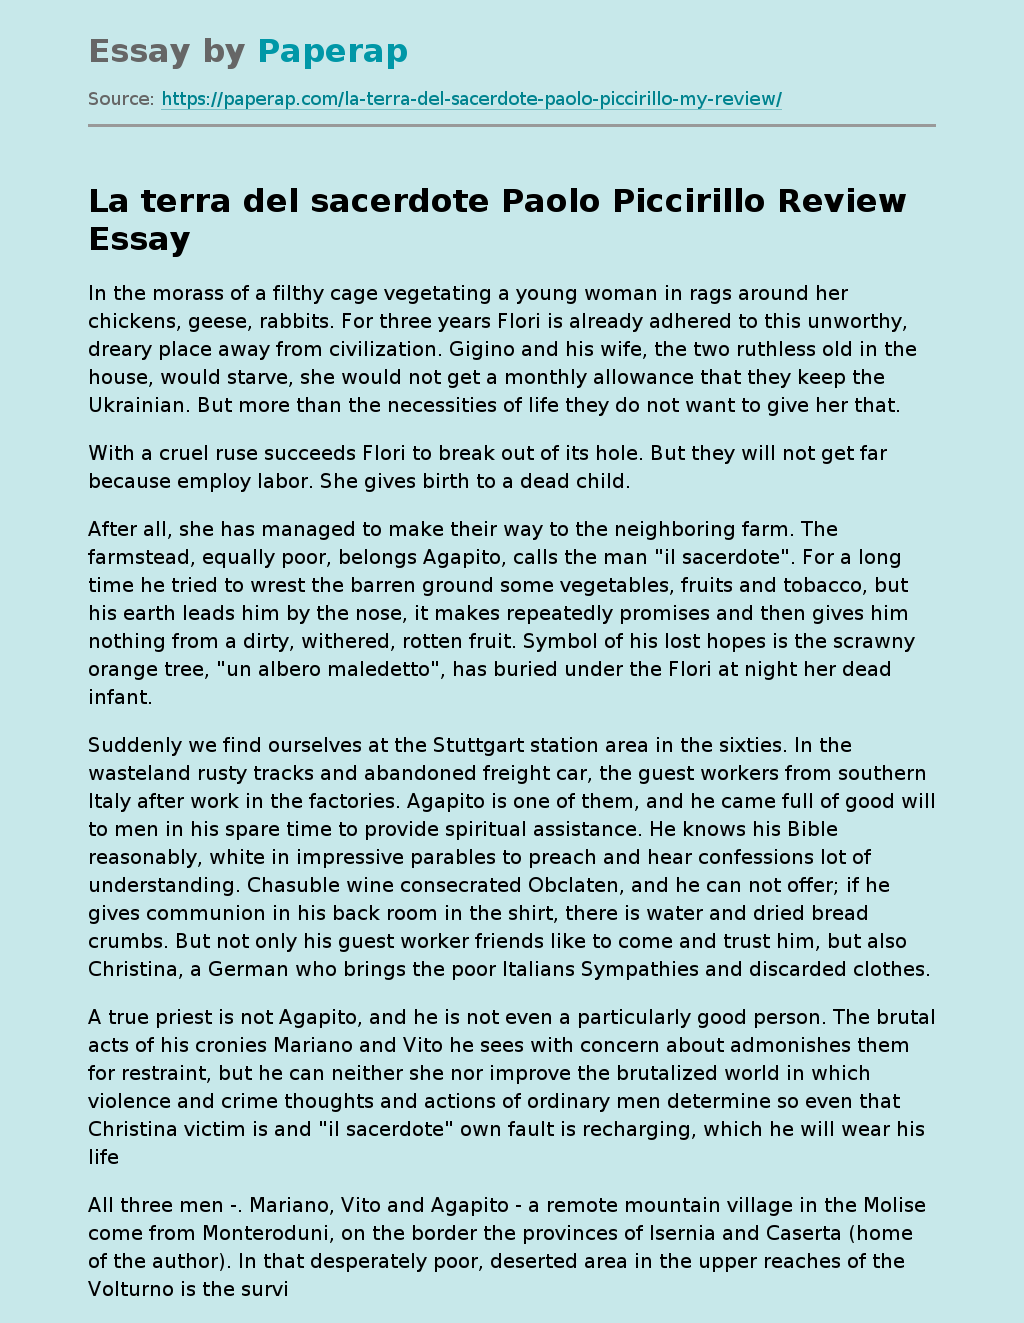 "La terra del sacerdote" by Paolo Piccirillo